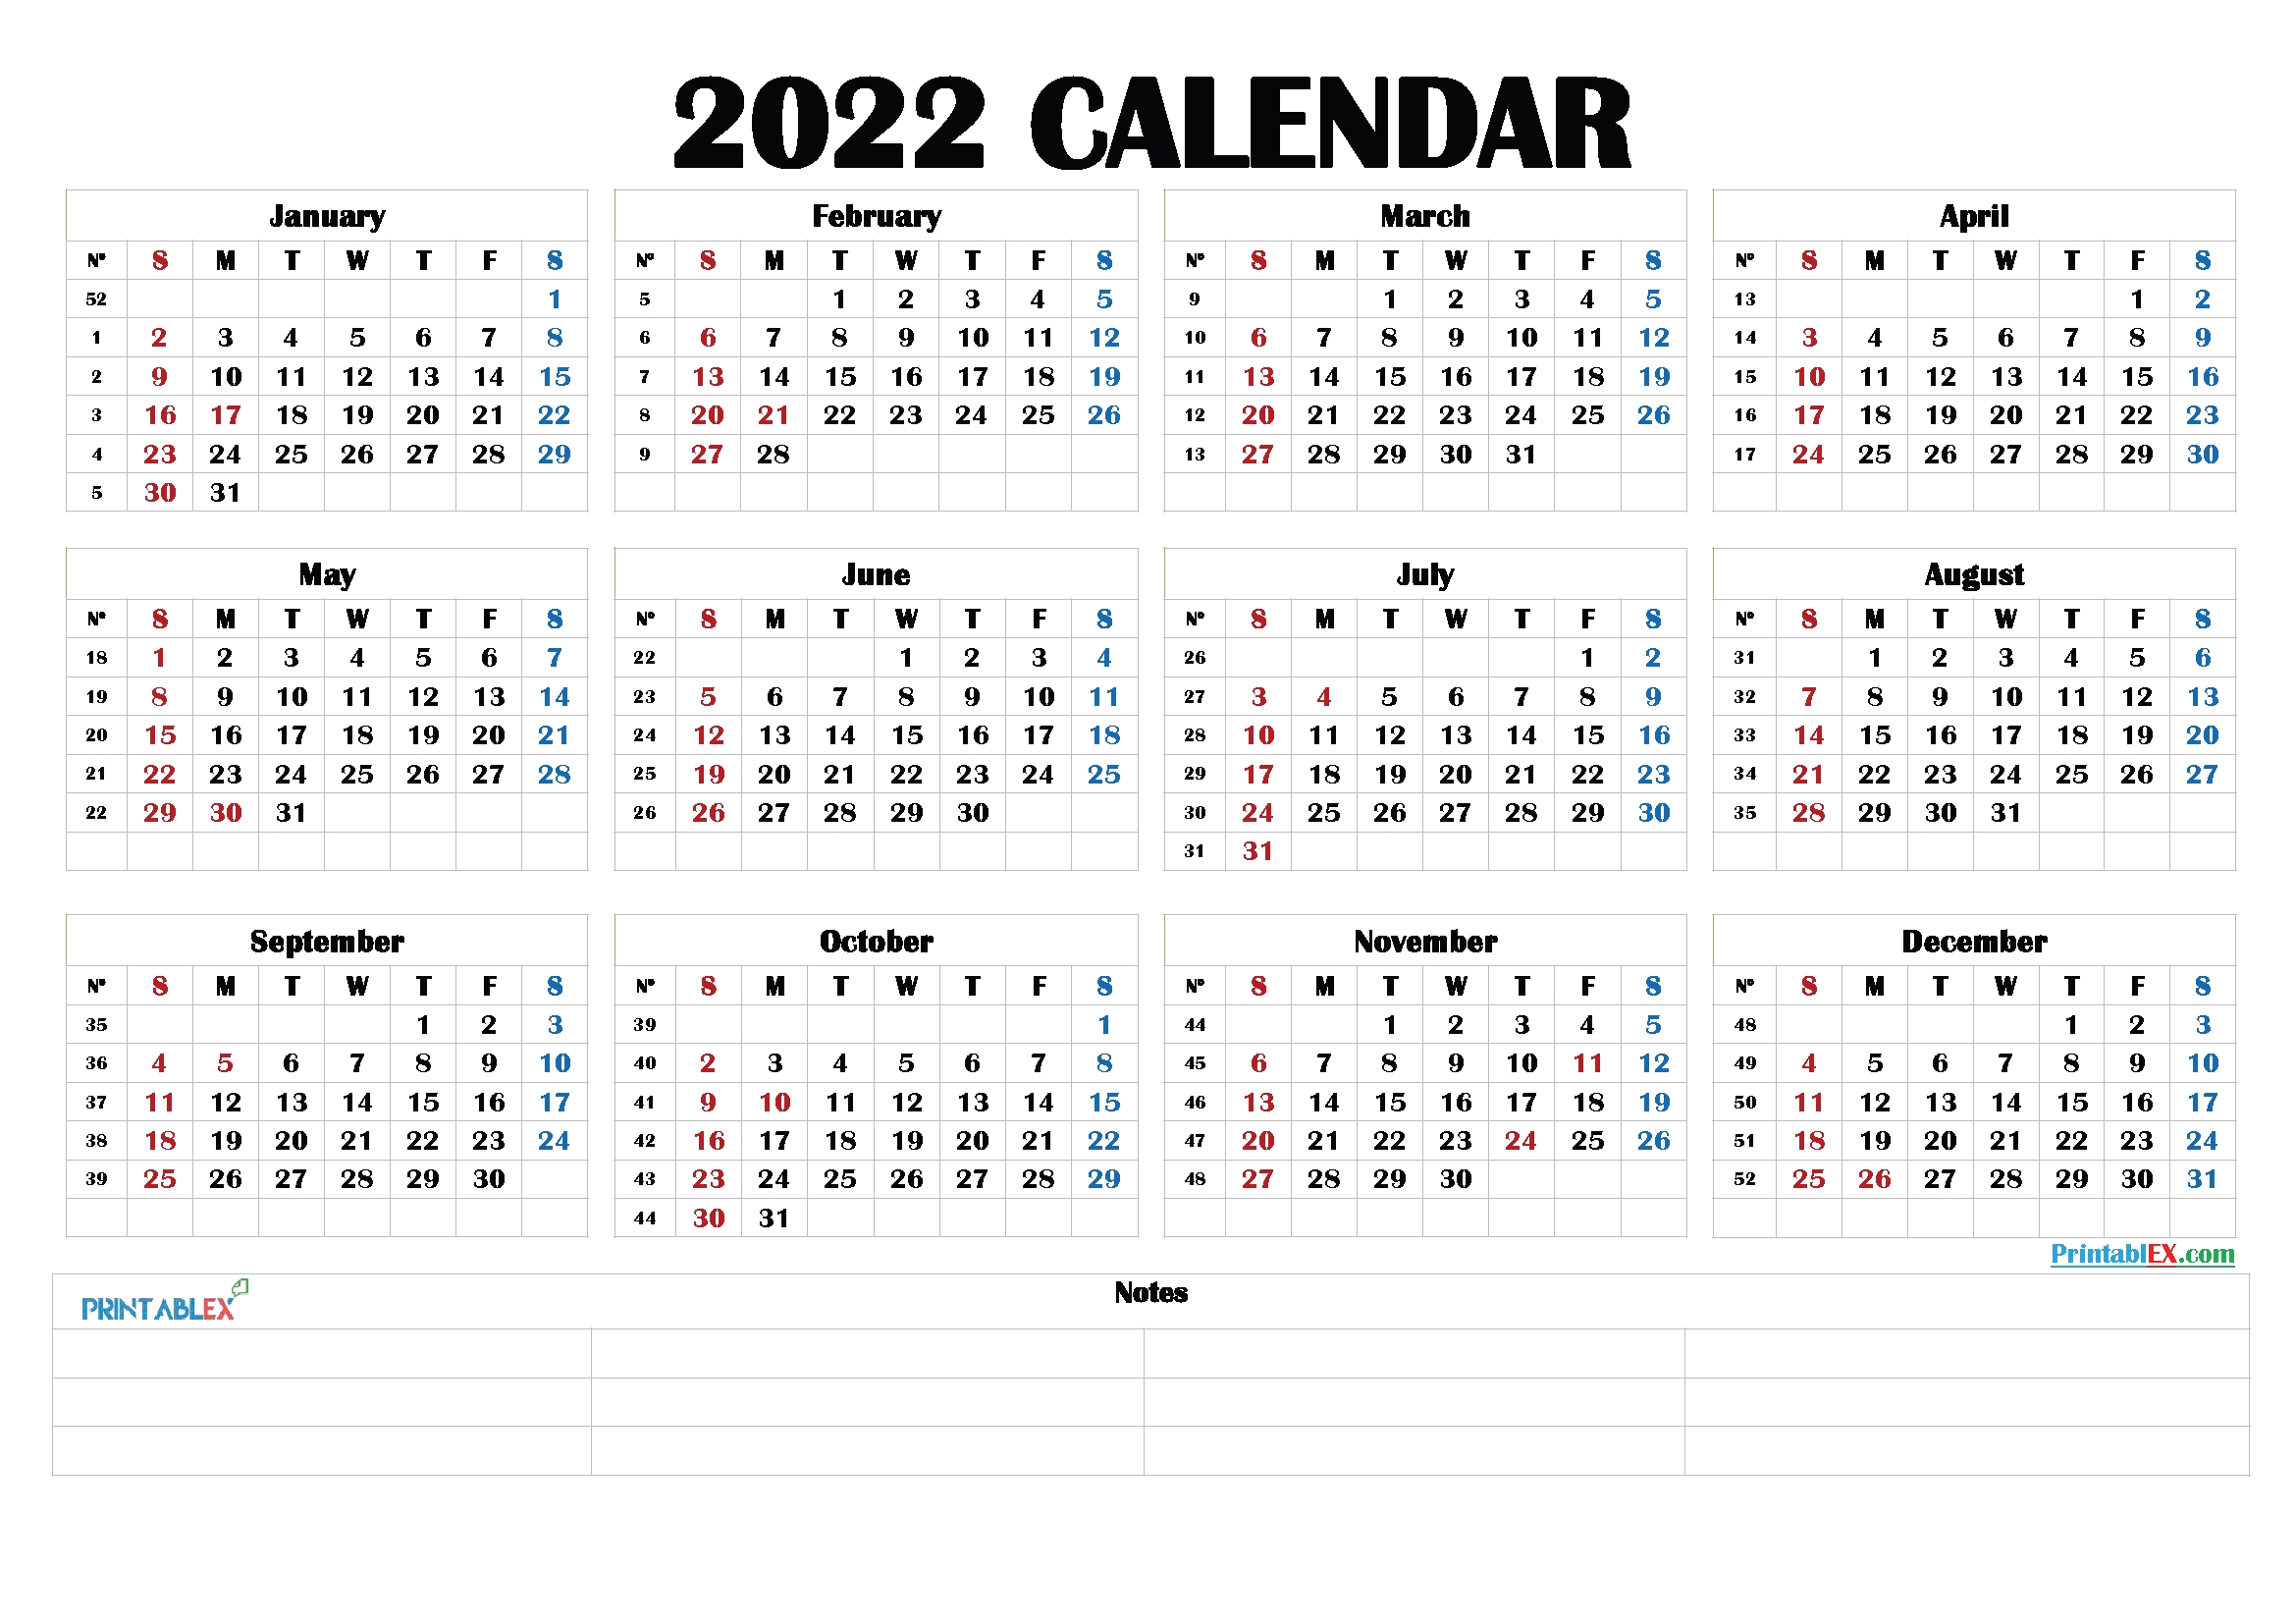 Free Printable 2022 Calendar By Month - 22Ytw190